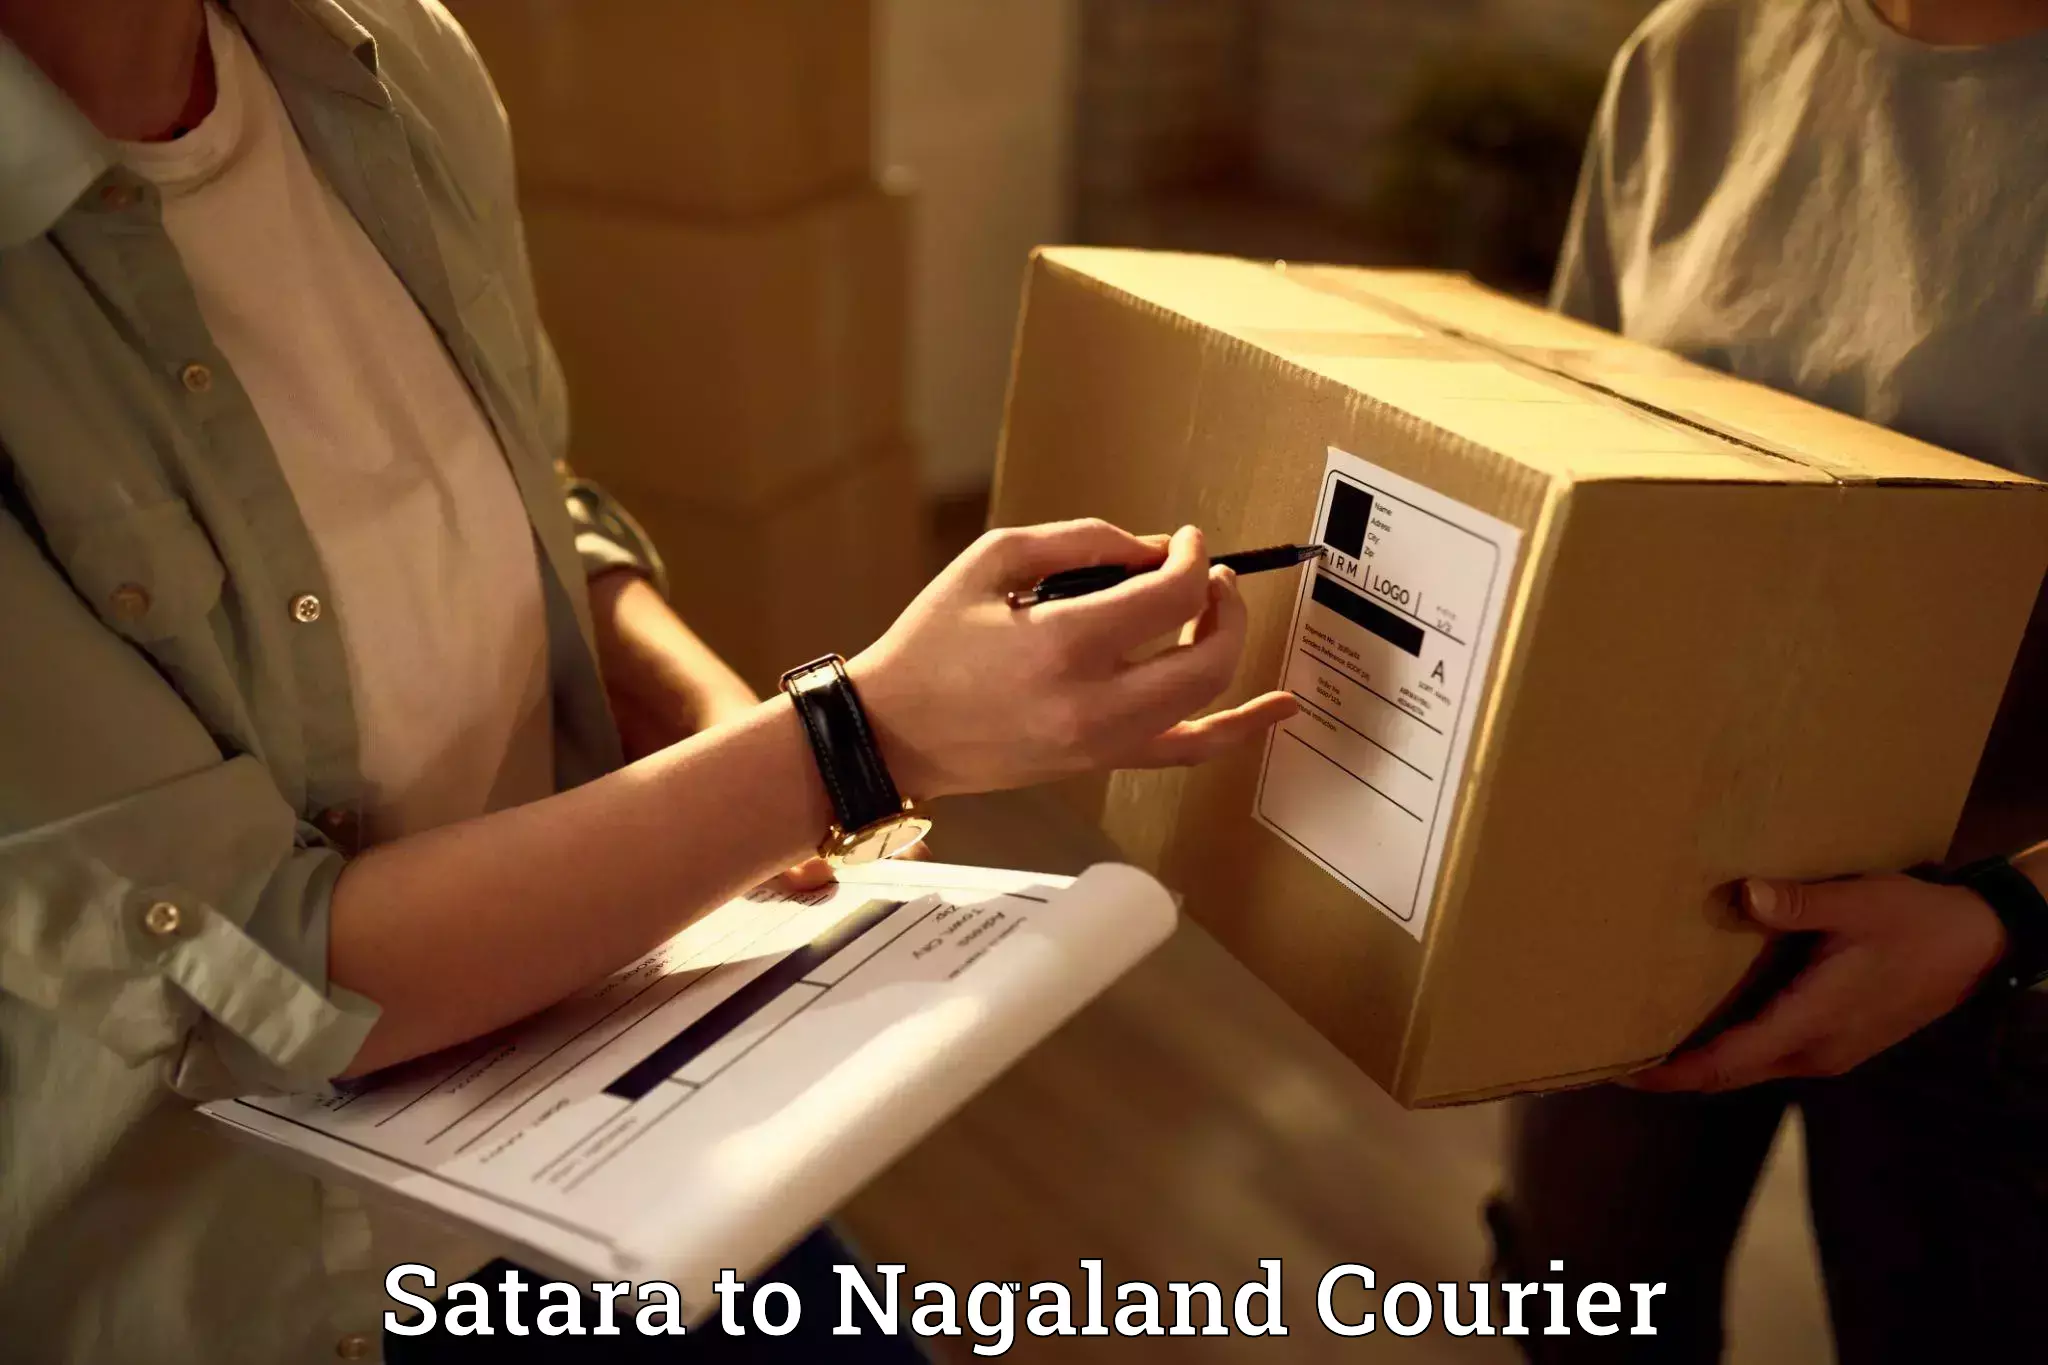 Household moving experts Satara to Nagaland